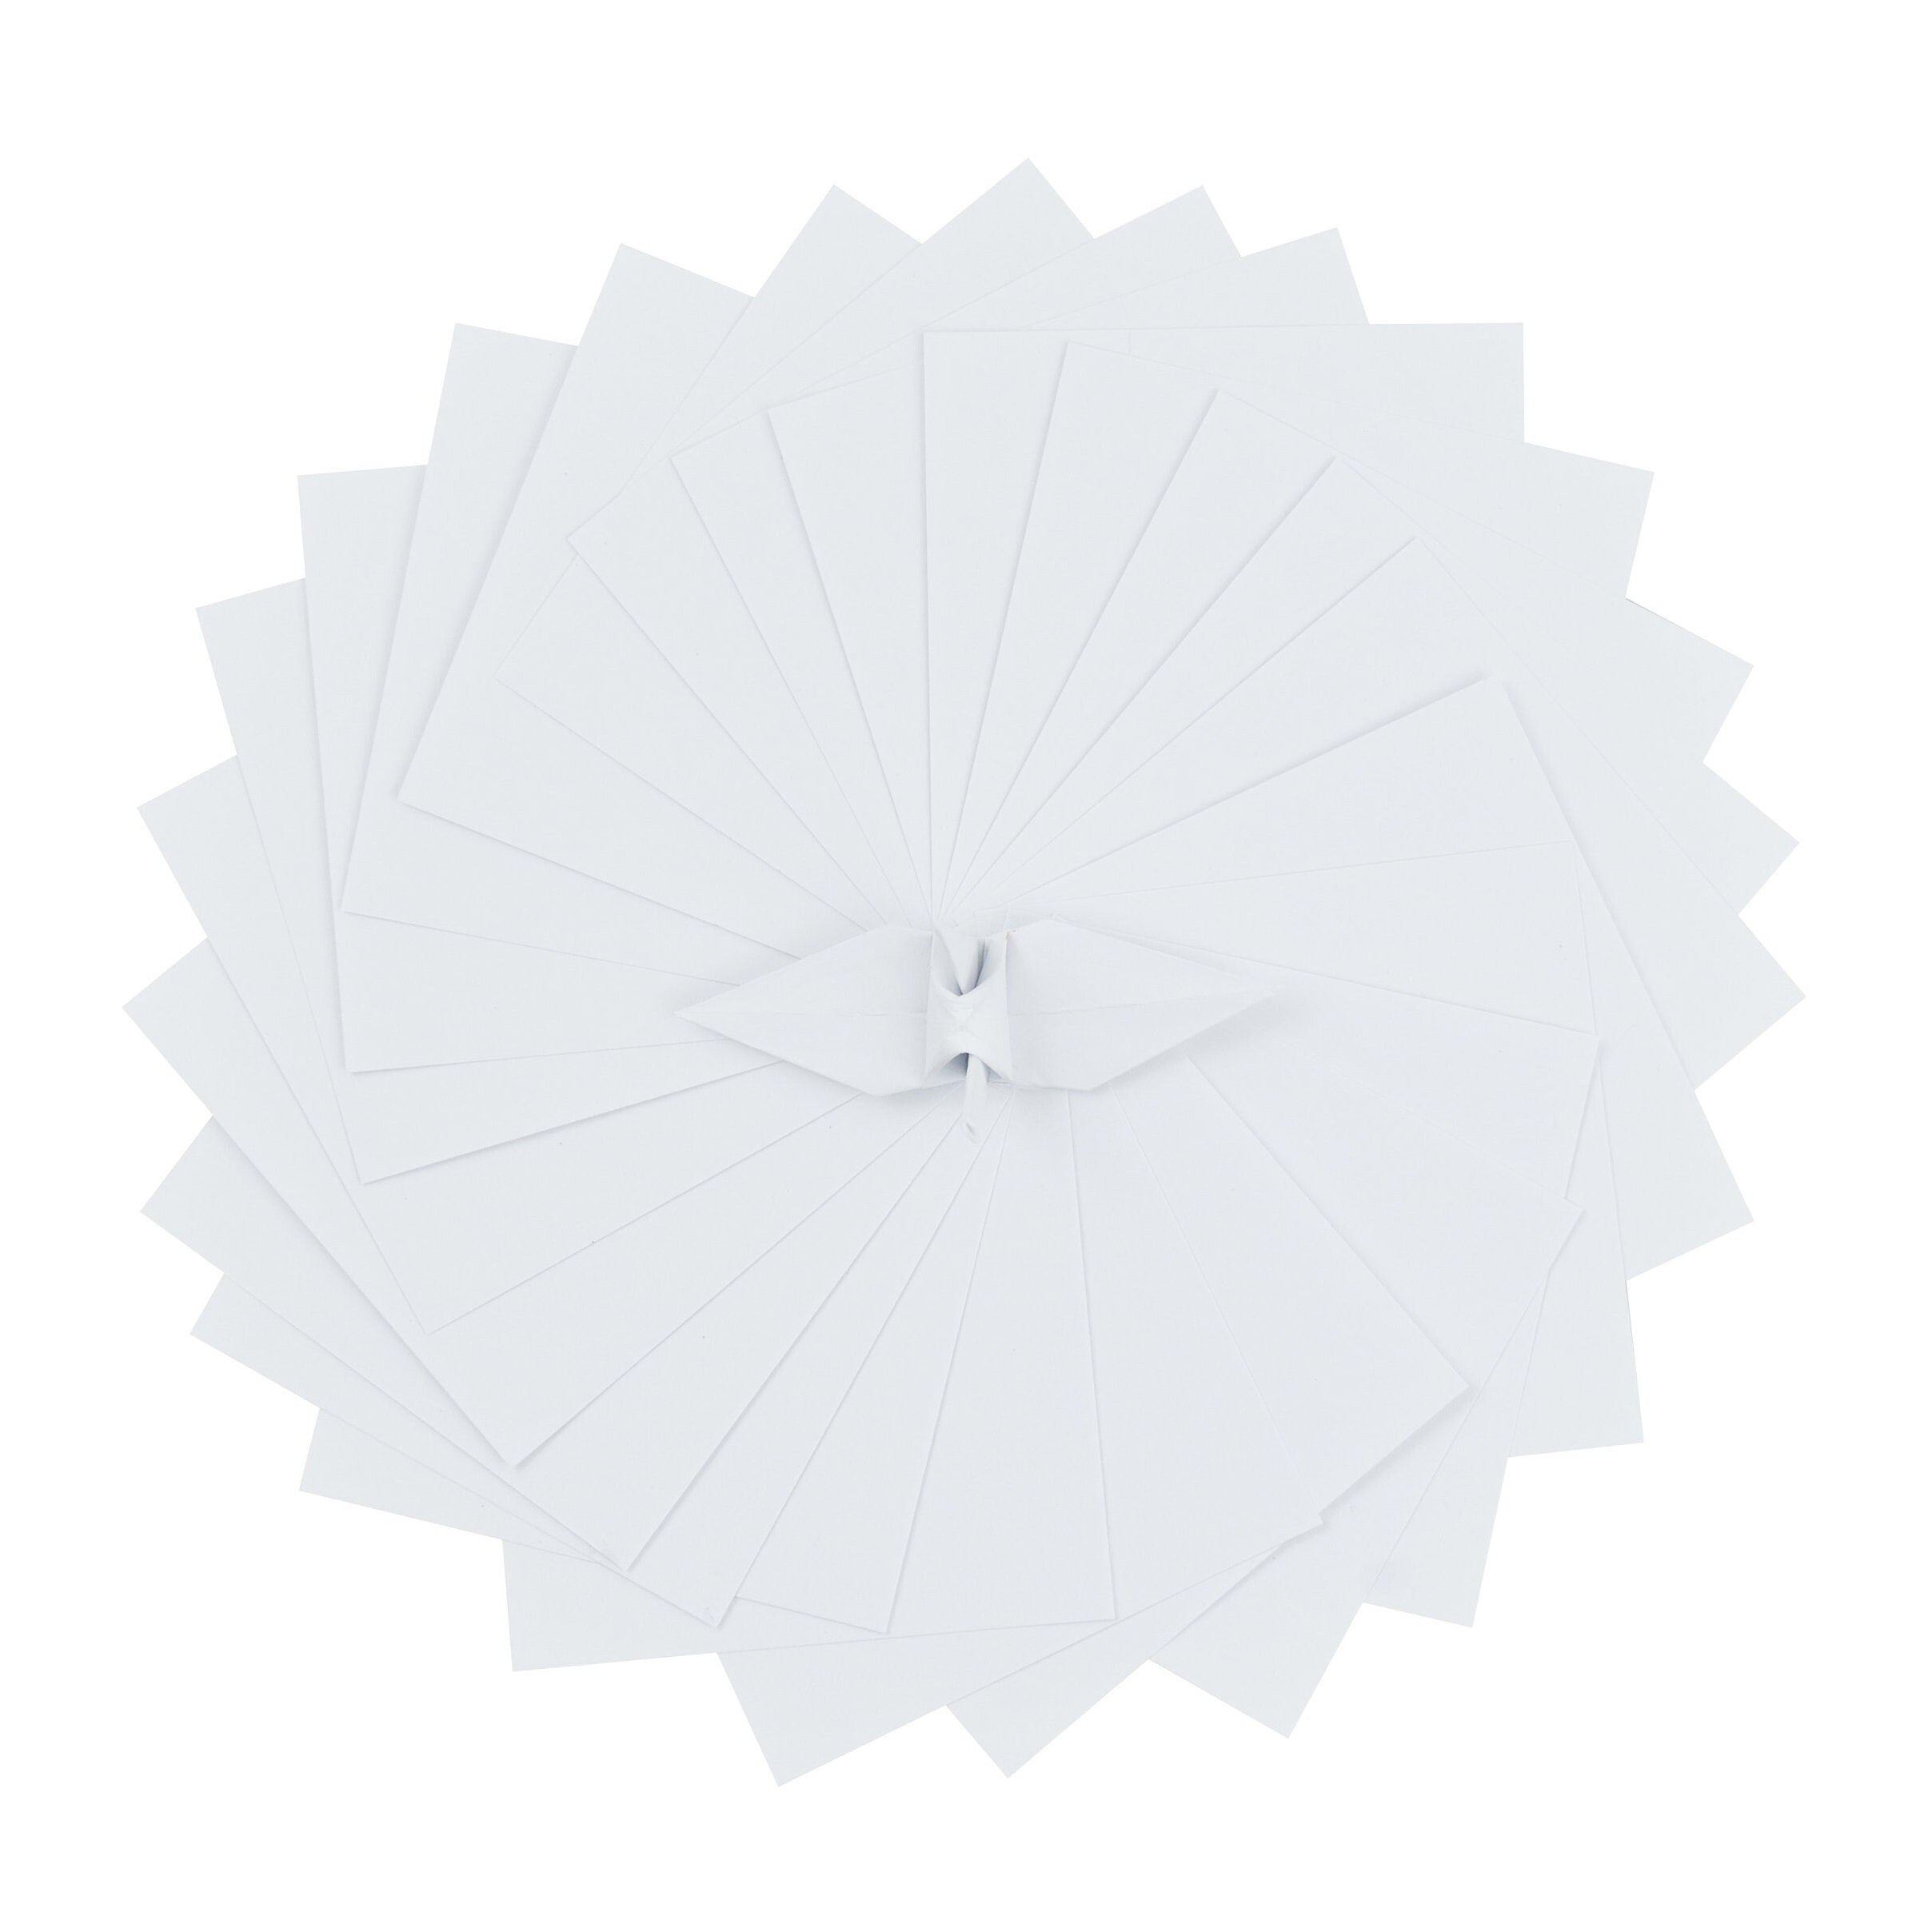 100 Hojas de Papel Origami - 3x3 pulgadas - Paquete de Papel Cuadrado para Plegar, Grullas de Origami y Decoración - S01